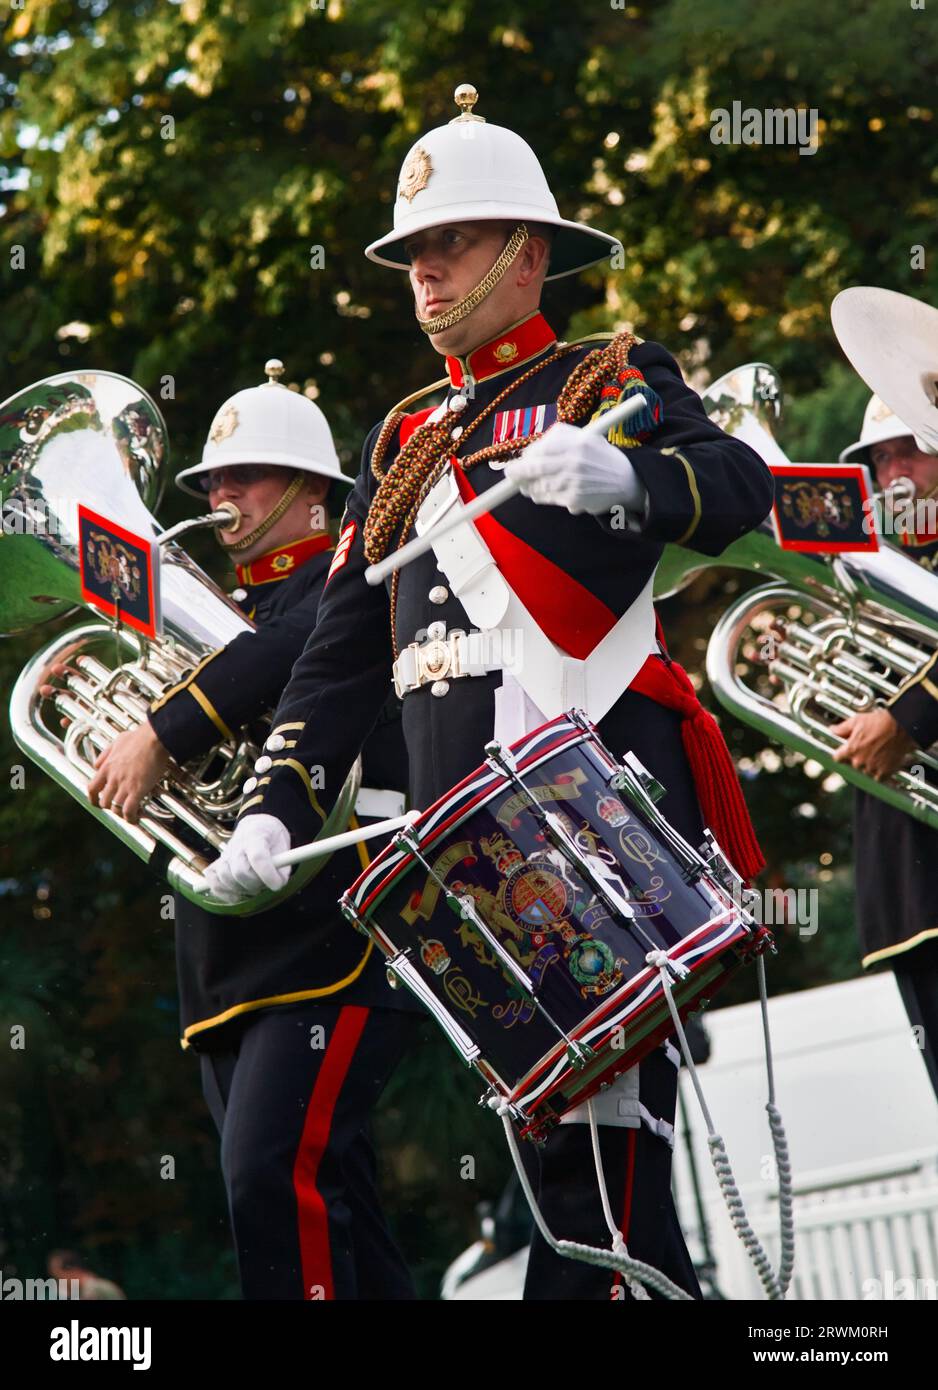 Schlagzeuger mit Side Drum der Royal Marines Band Service Marching Band Beating the Retreat in Bournemouth Gardens auf der Bournemouth Air Show, Großbritannien Stockfoto